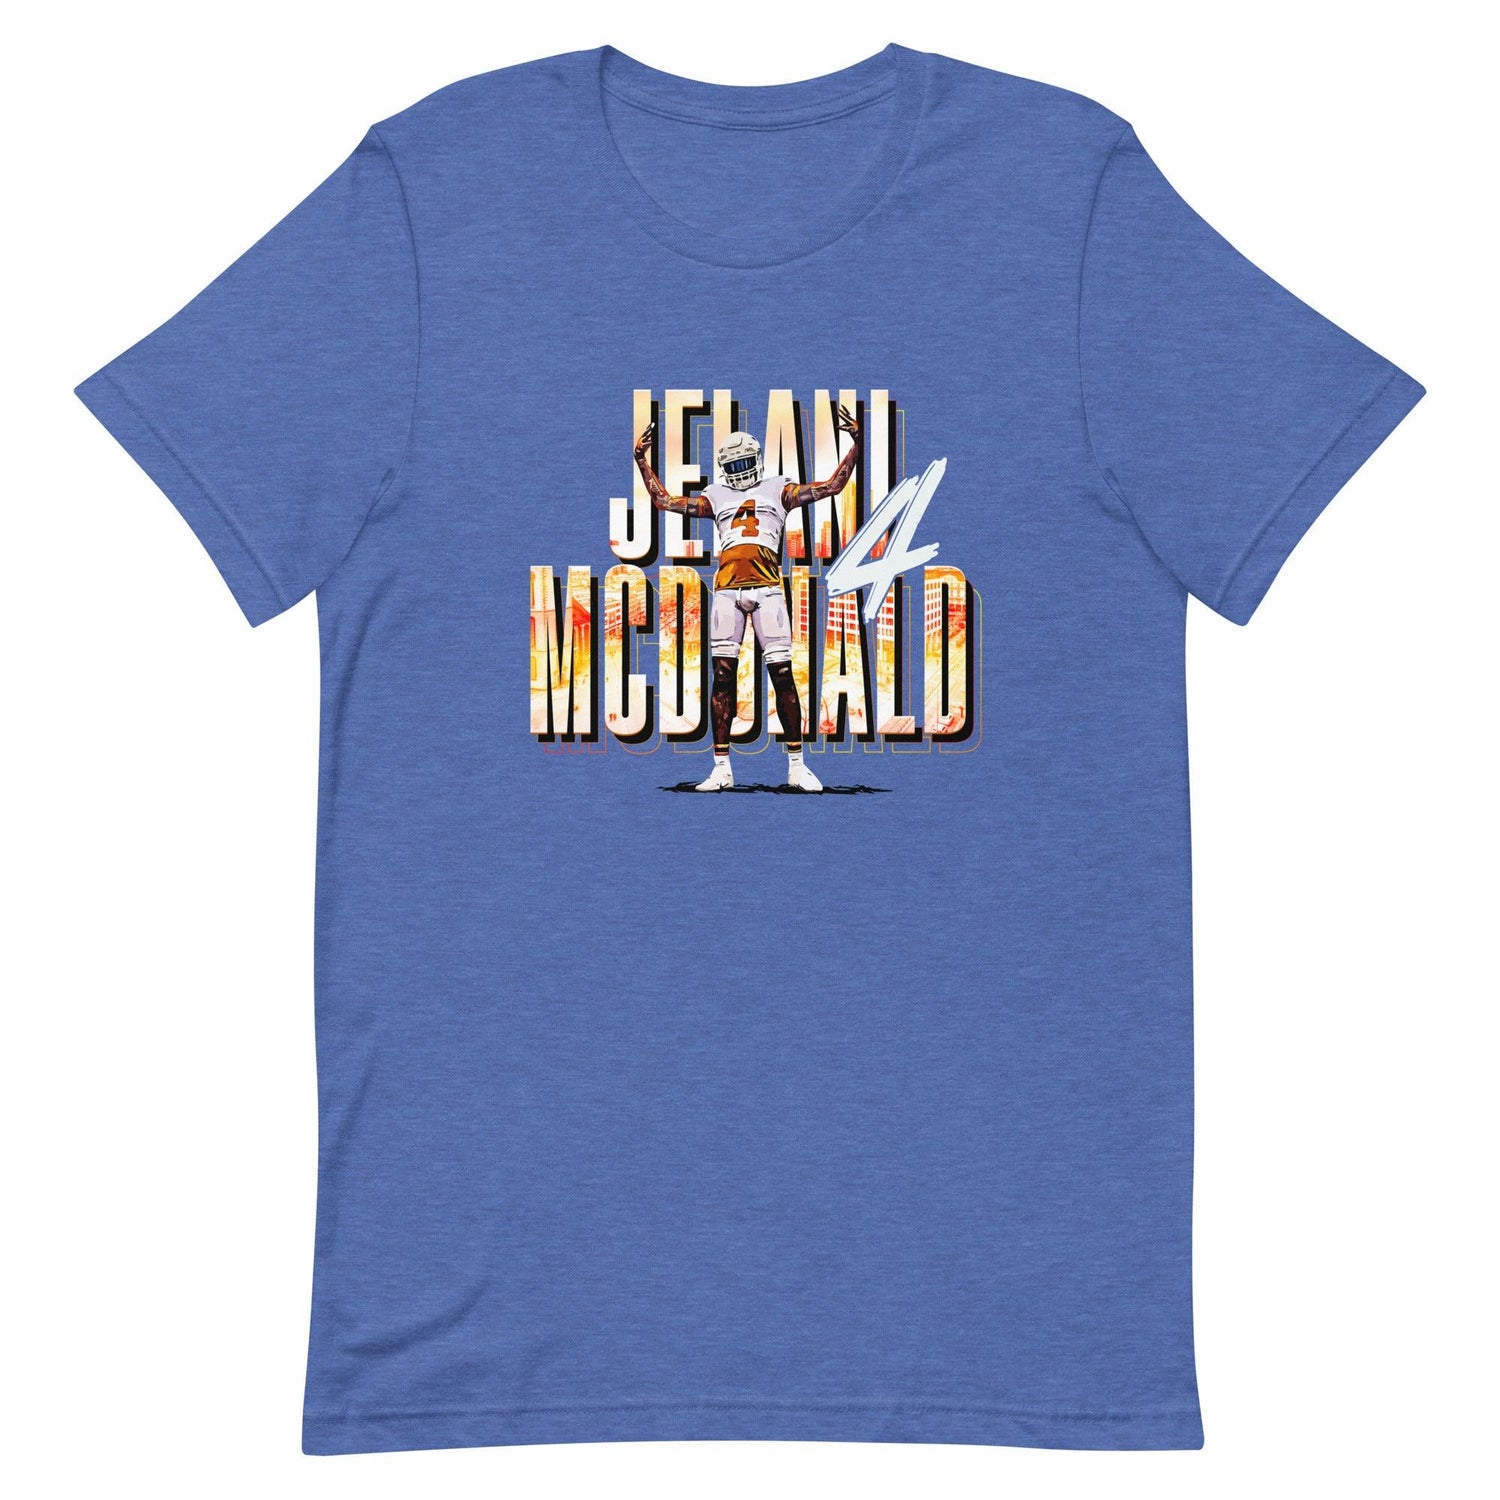 Jelani McDonald "Phenom" t-shirt - Fan Arch